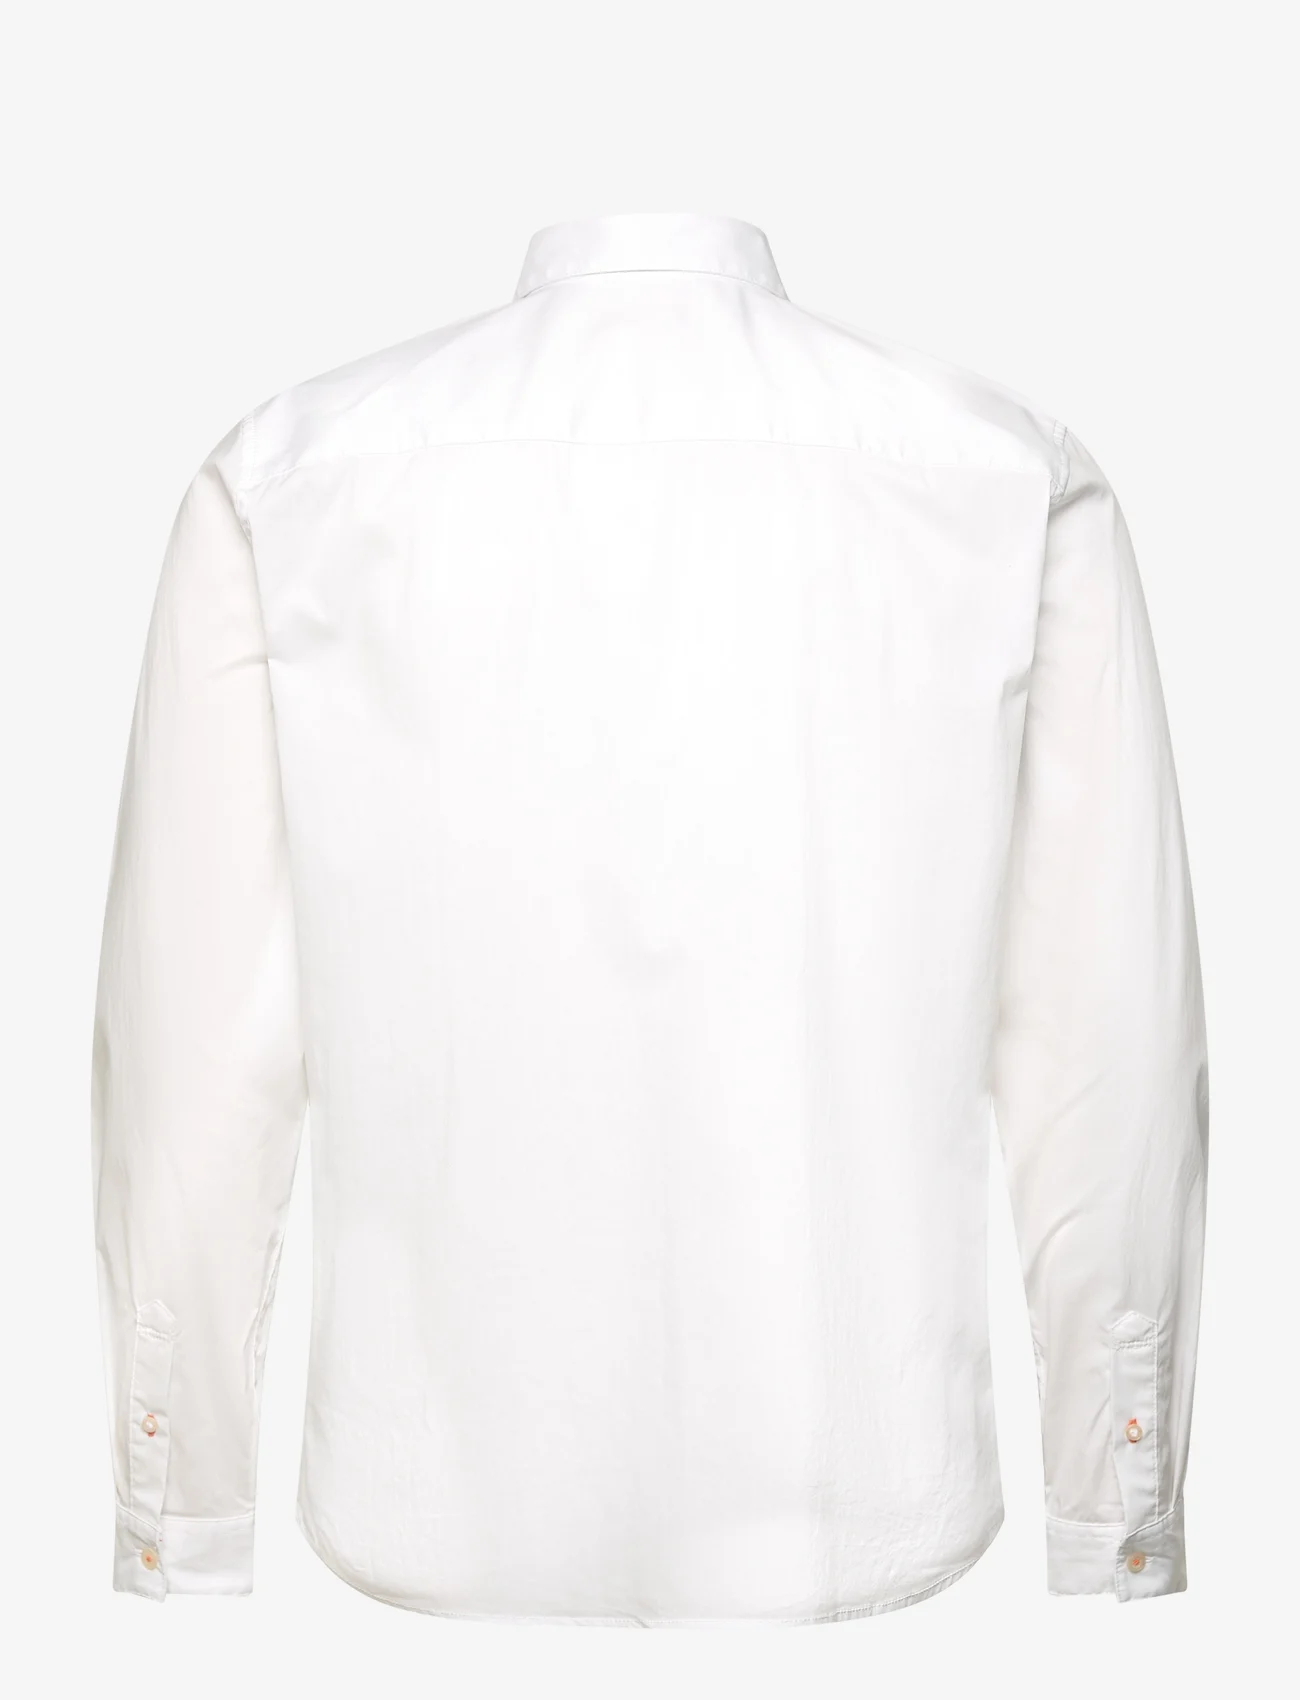 Tom Tailor - performance shirt - peruskauluspaidat - white - 1